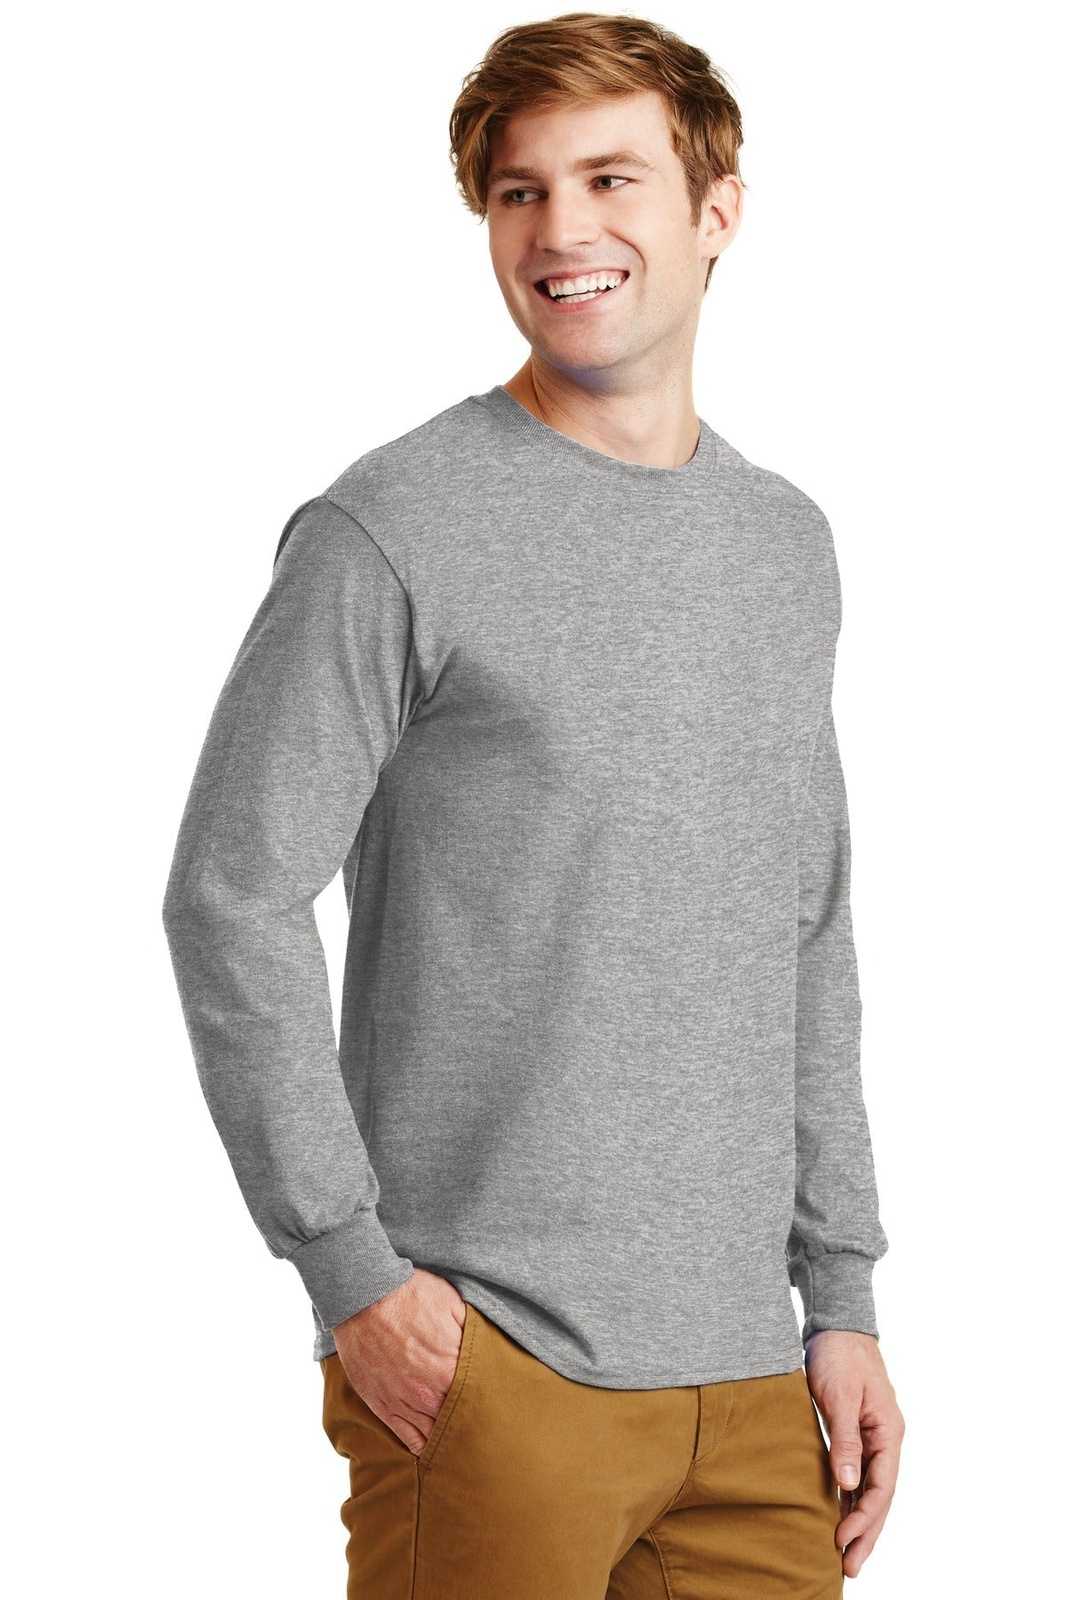 Gildan G2400 Ultra Cotton 100% Cotton Long Sleeve T-Shirt - Sport Gray - HIT a Double